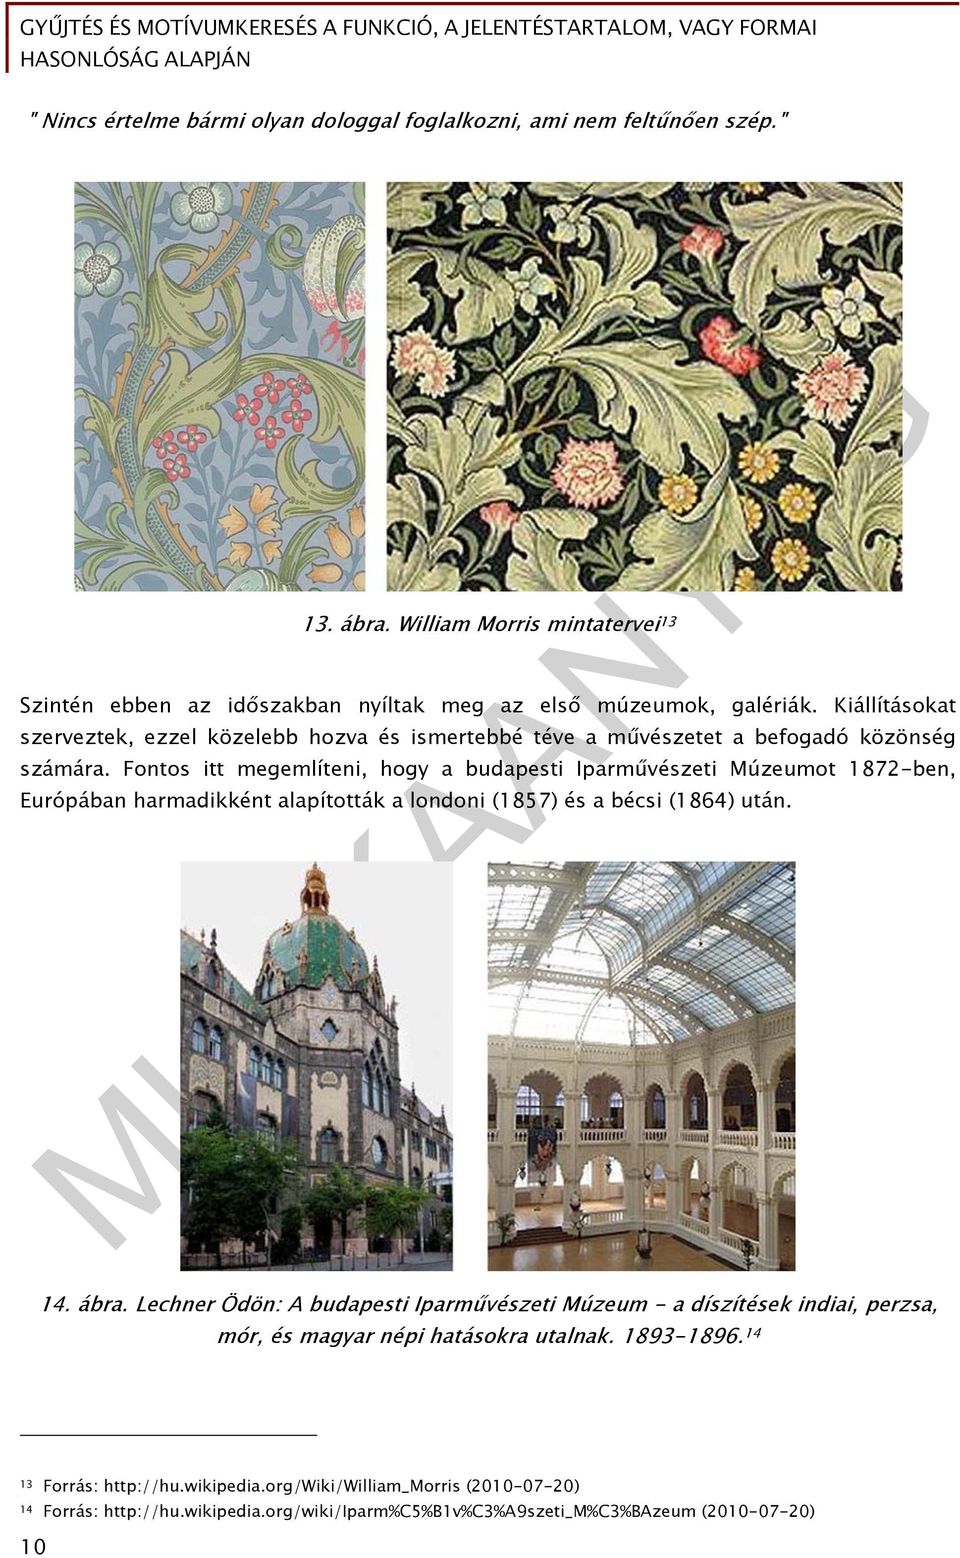 Fontos itt megemlíteni, hogy a budapesti Iparművészeti Múzeumot 1872-ben, Európában harmadikként alapították a londoni (1857) és a bécsi (1864) után. 14. ábra.